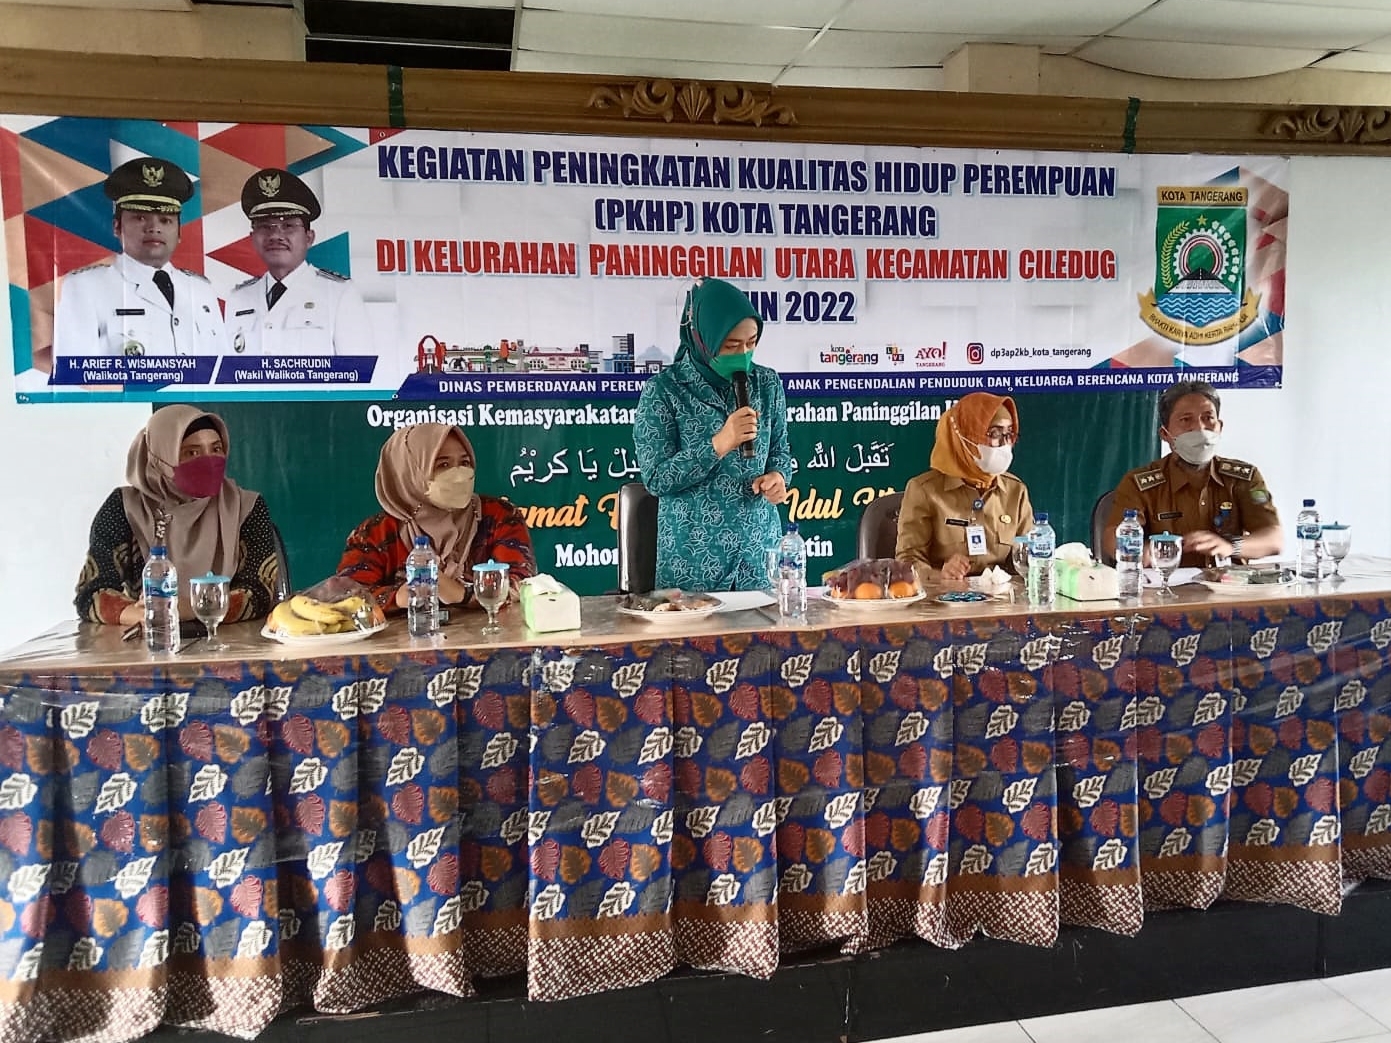 Kegiatan Peningkatan Kualitas Hidup Perempuan (PKHP) Kota Tangerang di Aula Kelurahan Paninggilan Utara